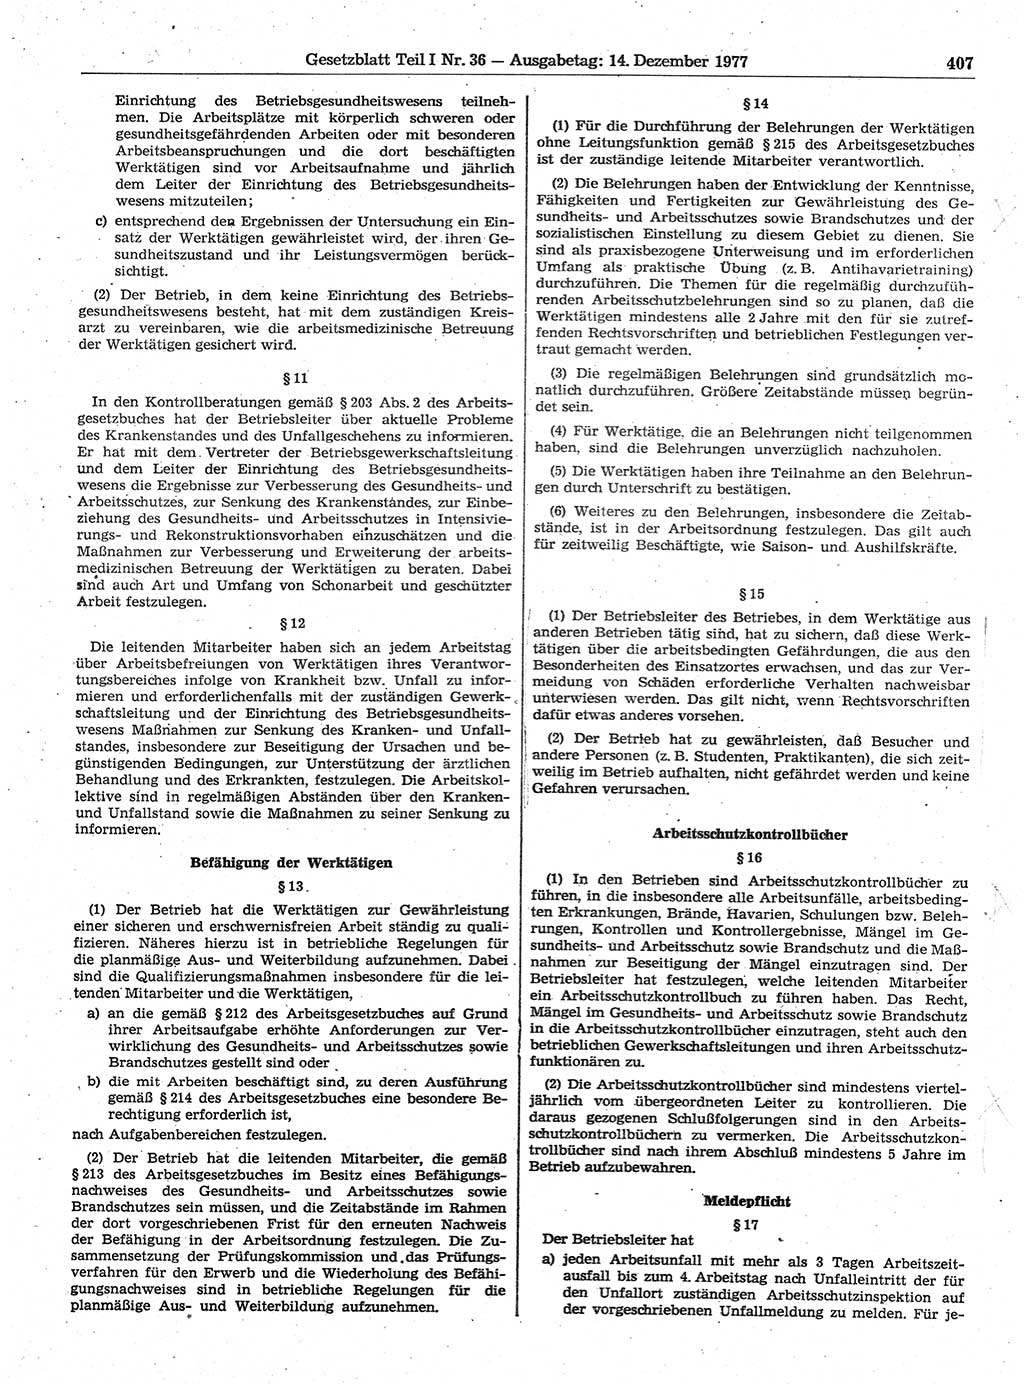 Gesetzblatt (GBl.) der Deutschen Demokratischen Republik (DDR) Teil Ⅰ 1977, Seite 407 (GBl. DDR Ⅰ 1977, S. 407)